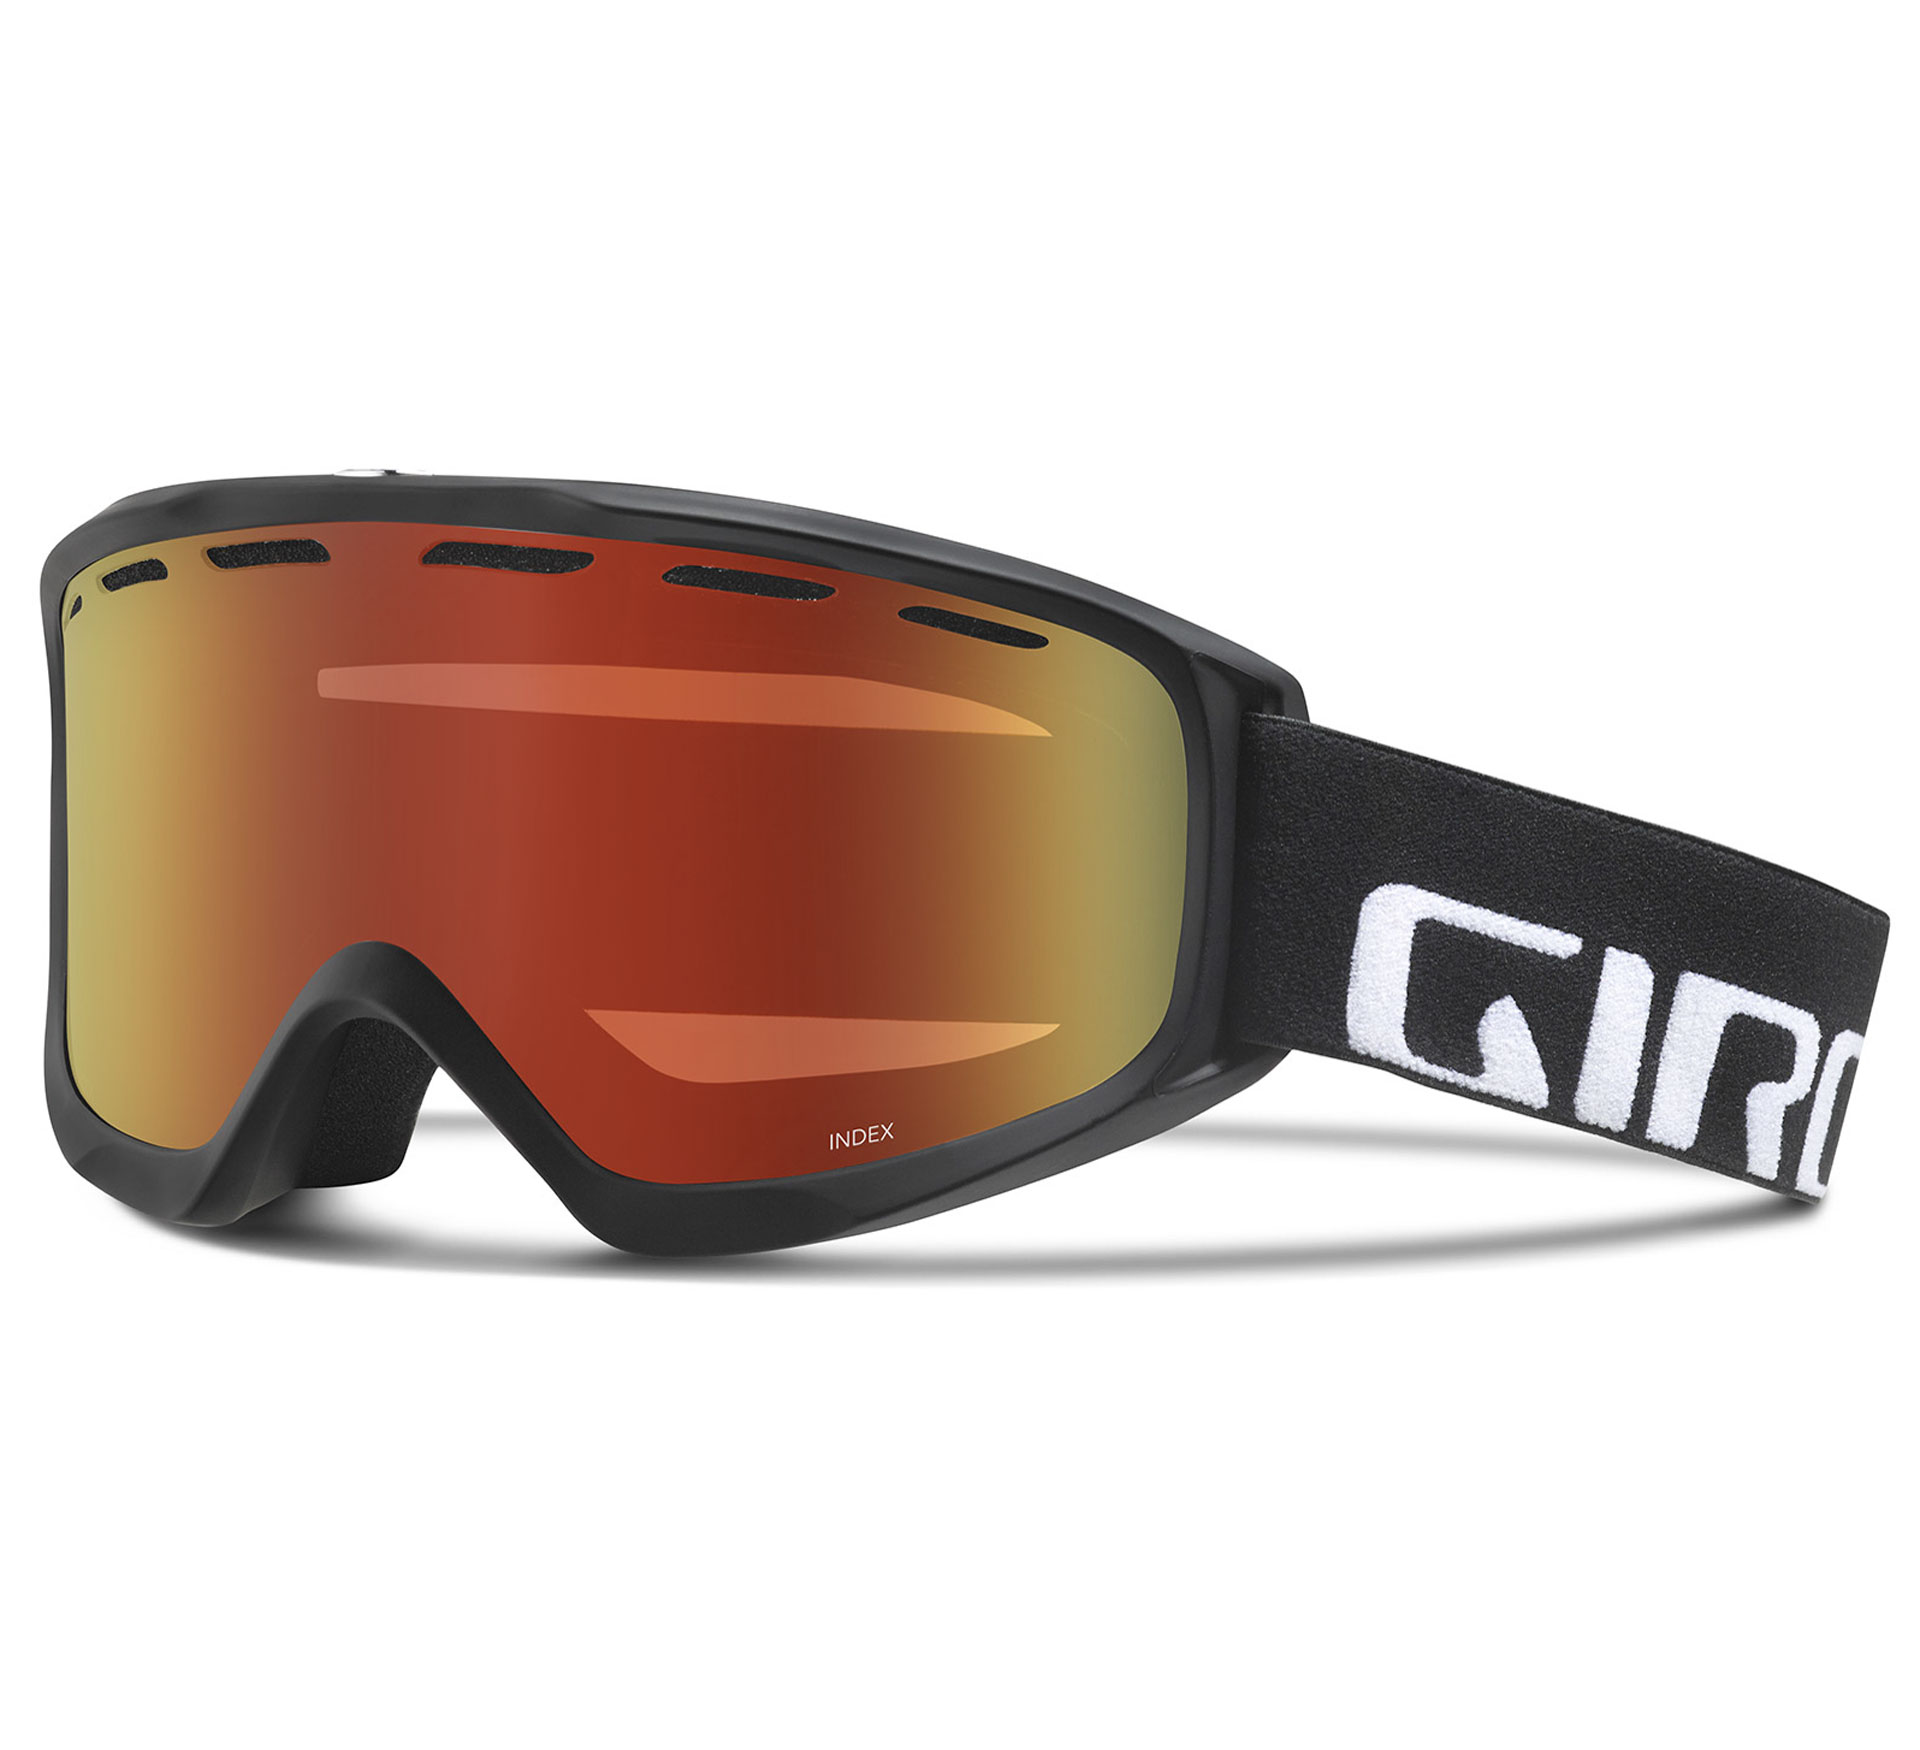 Giro Index OTG, Lunettes de ski pour adultes